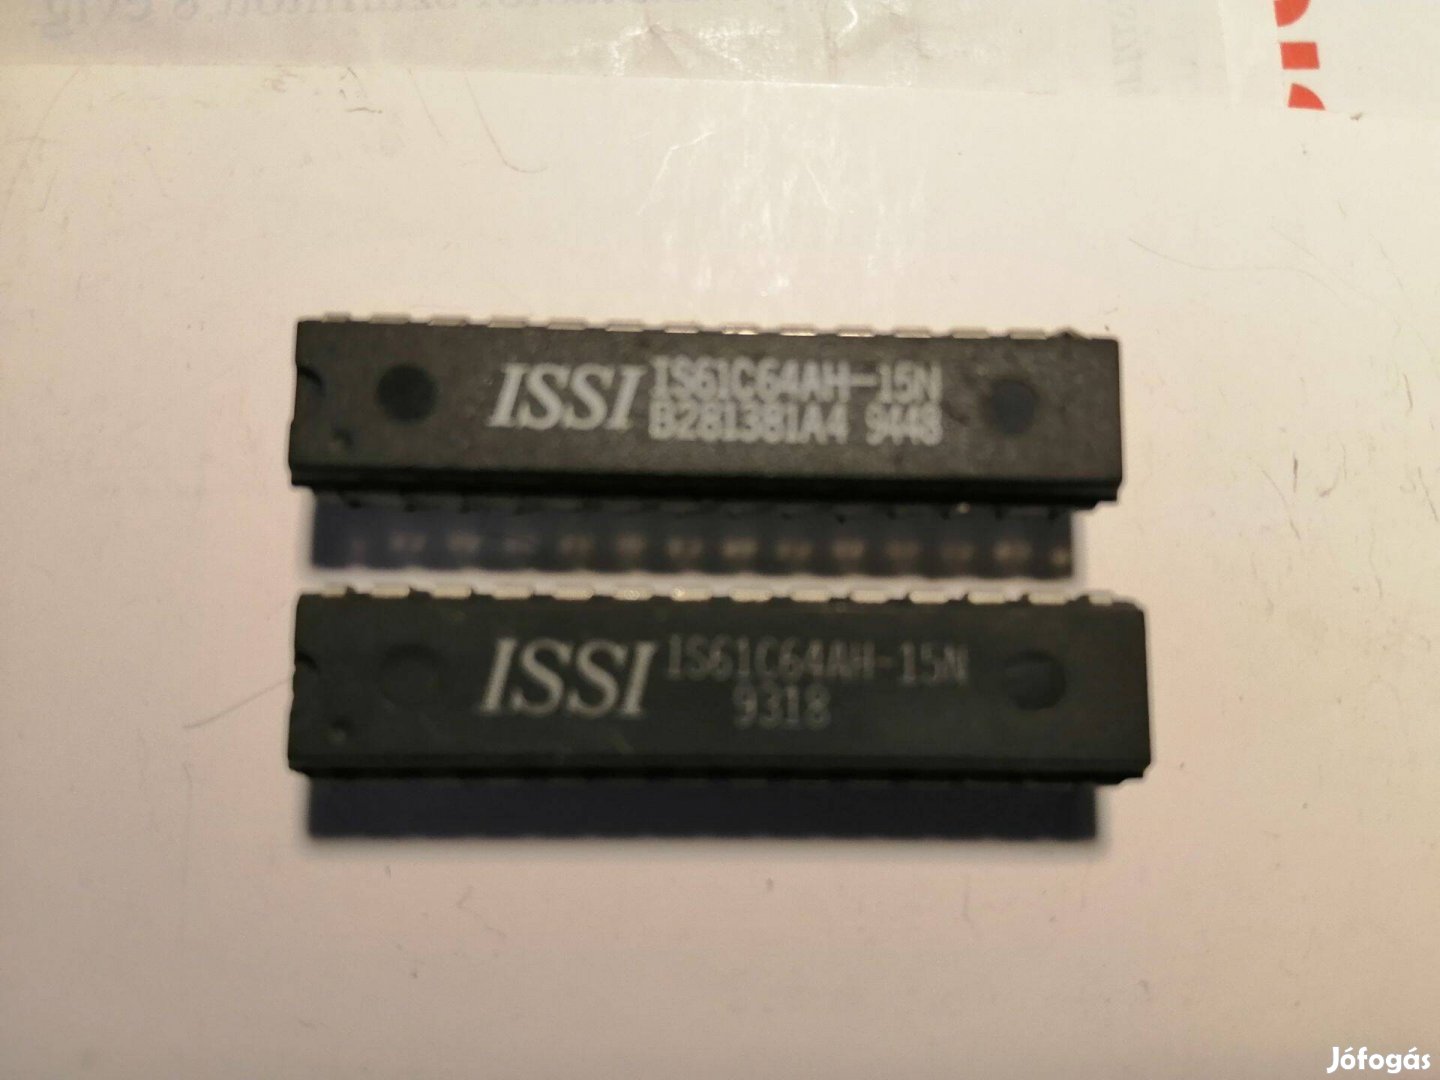 Issi Is61C64AH-15N Chip